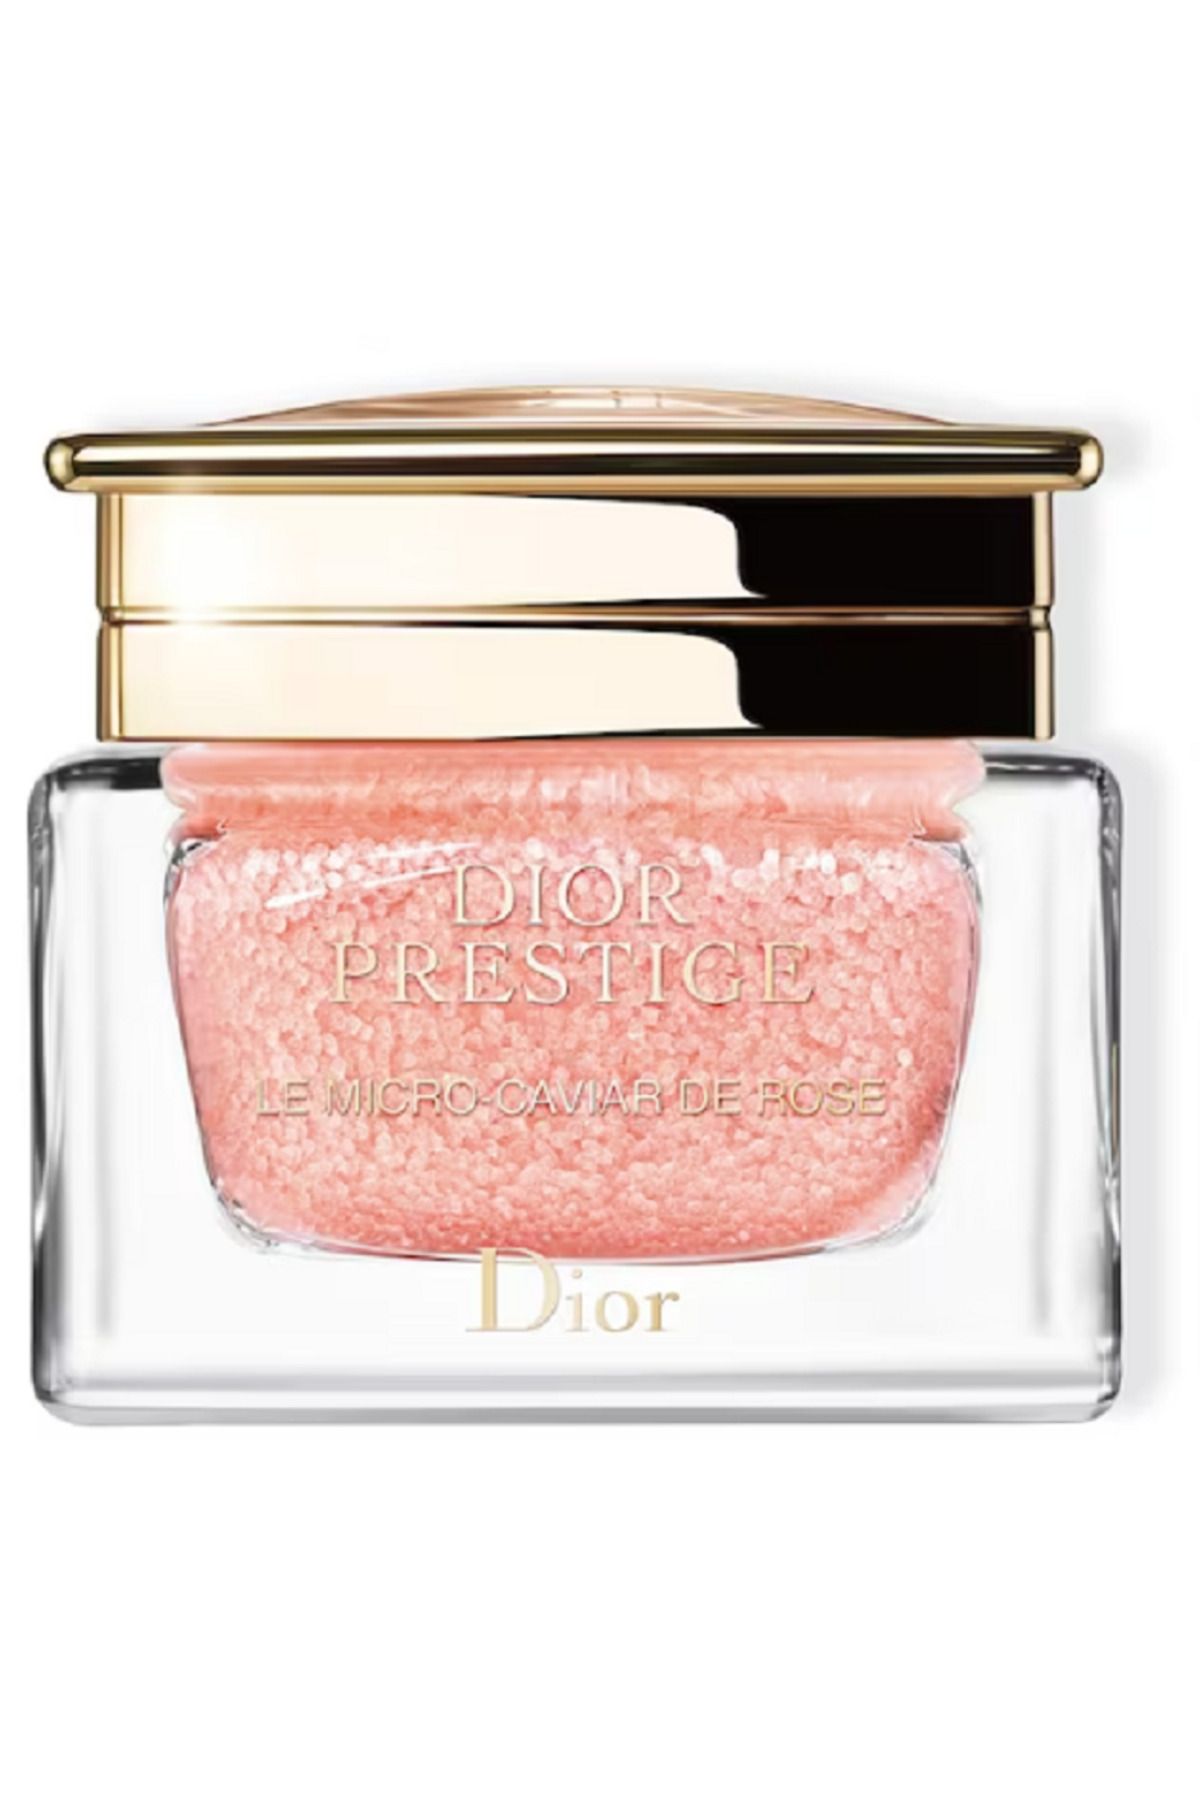 Dior Prestige Le Micro-Caviar de Rose - Yaşlanma Karşıtı Onarıcı Ve Dolgunlaştırıcı Yüz Kremi 75ML